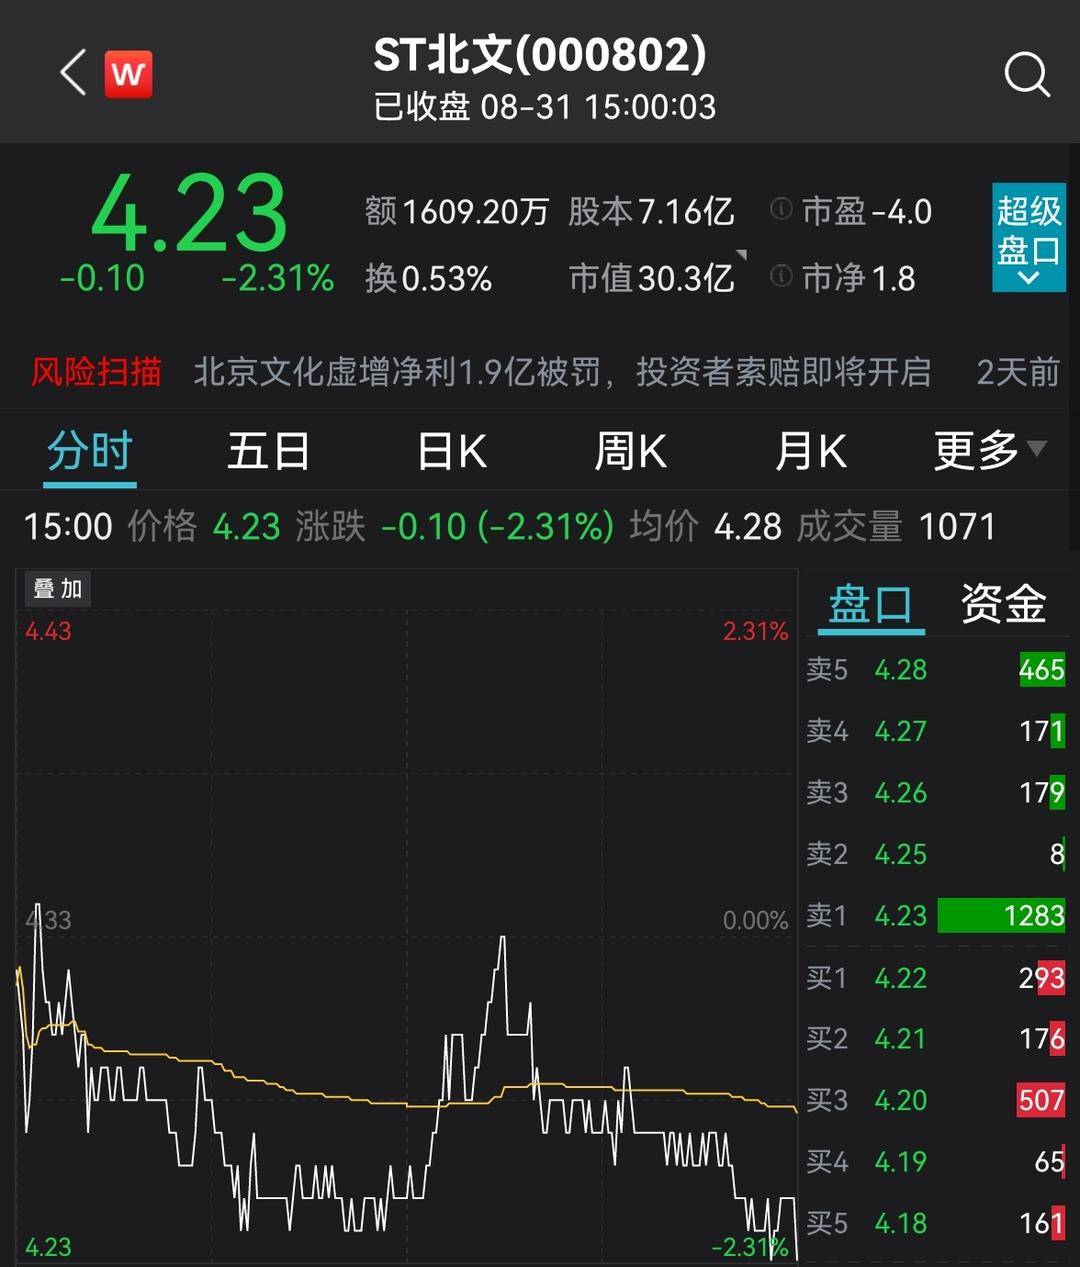 北京文化虚增净利1.9亿被罚 投资者索赔一触即发